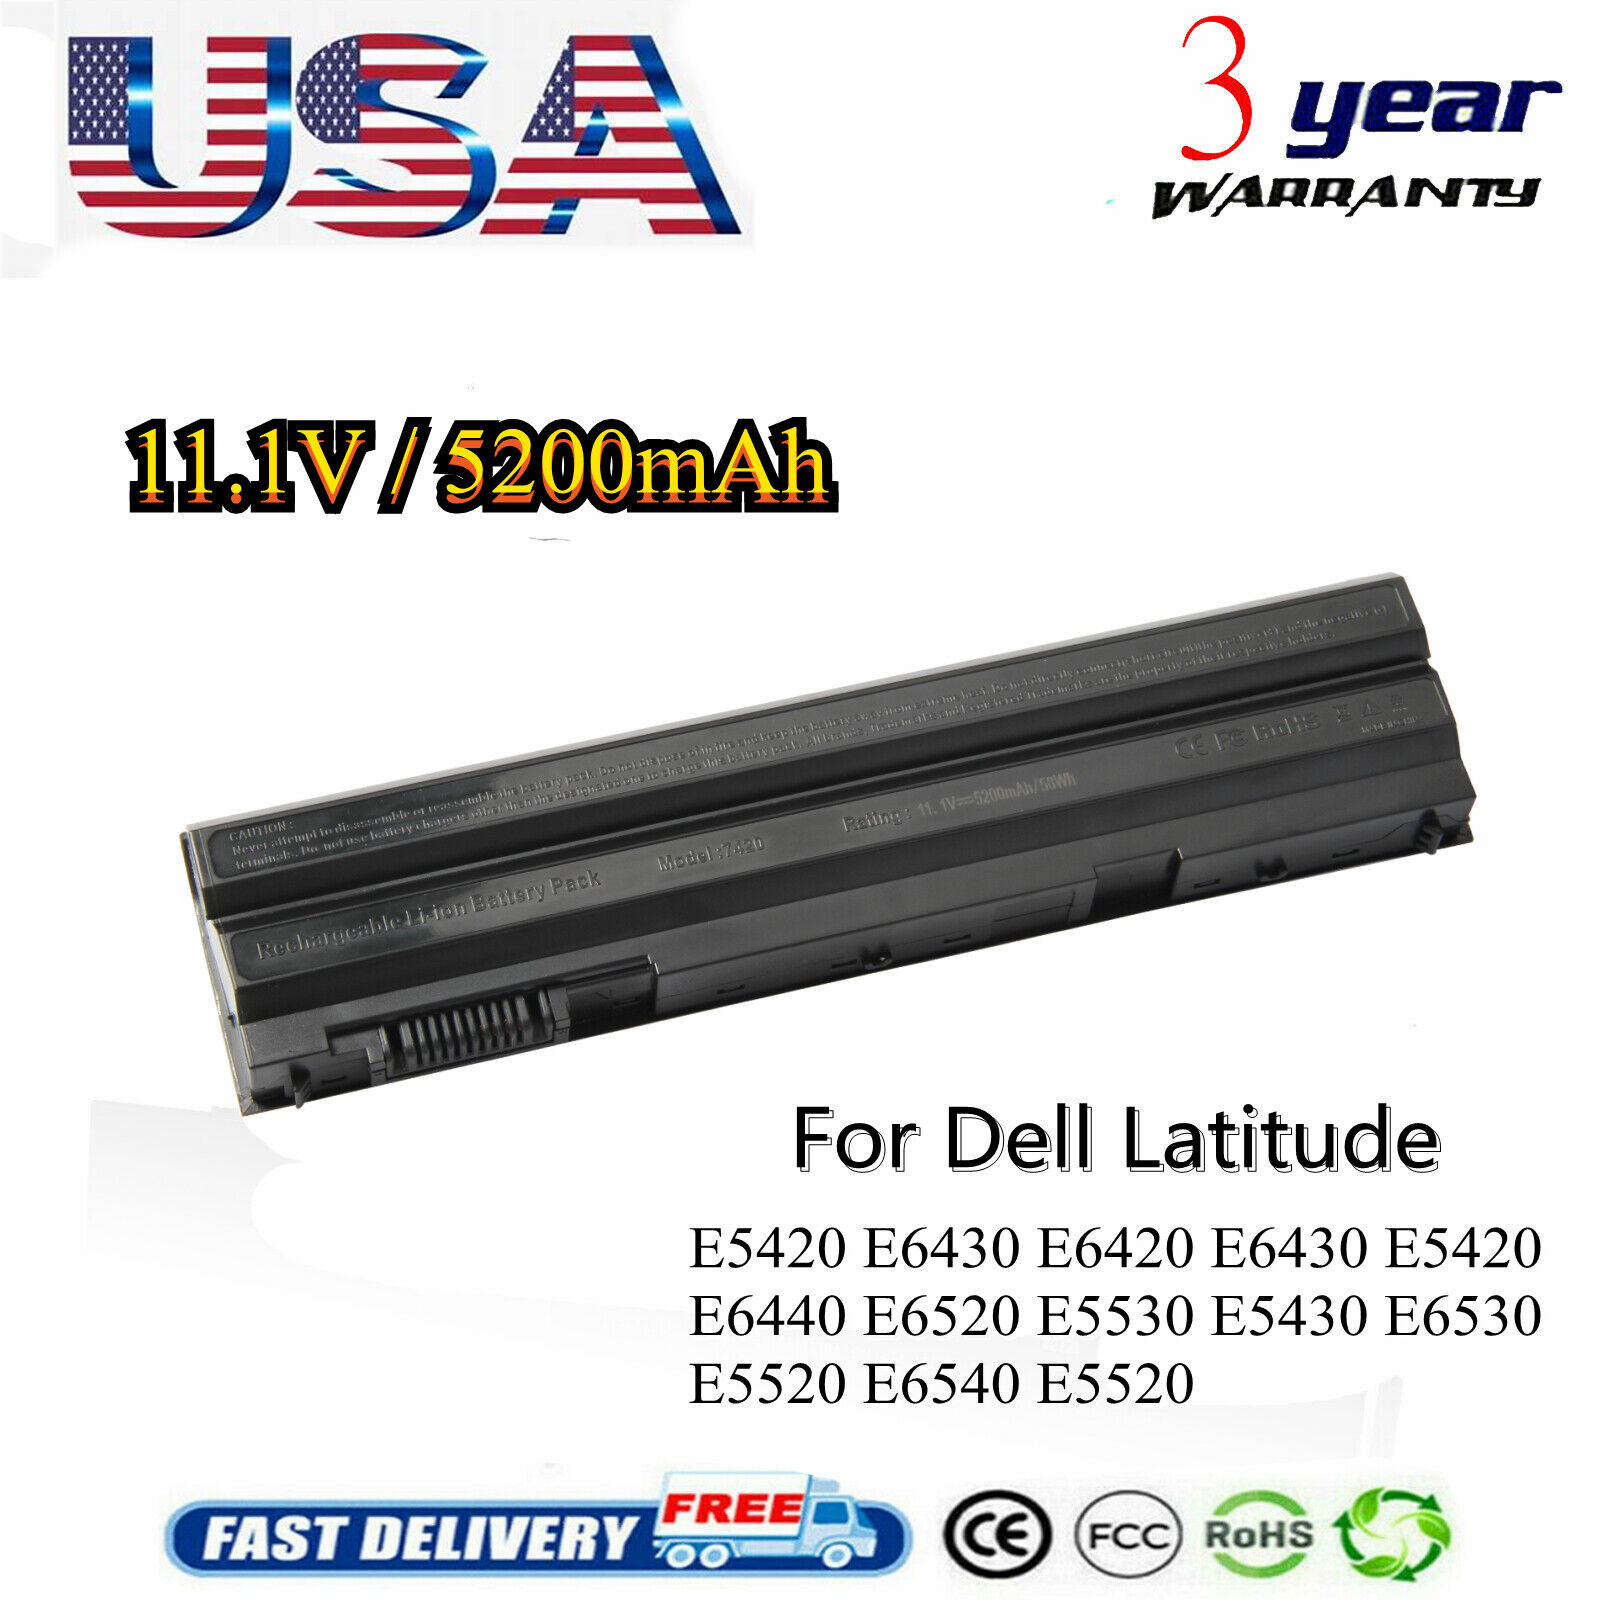 Battery for Dell Latitude E6420 E6430 E5420 E5520 E5530 E6440 T54FJ T54F3 M5Y0X